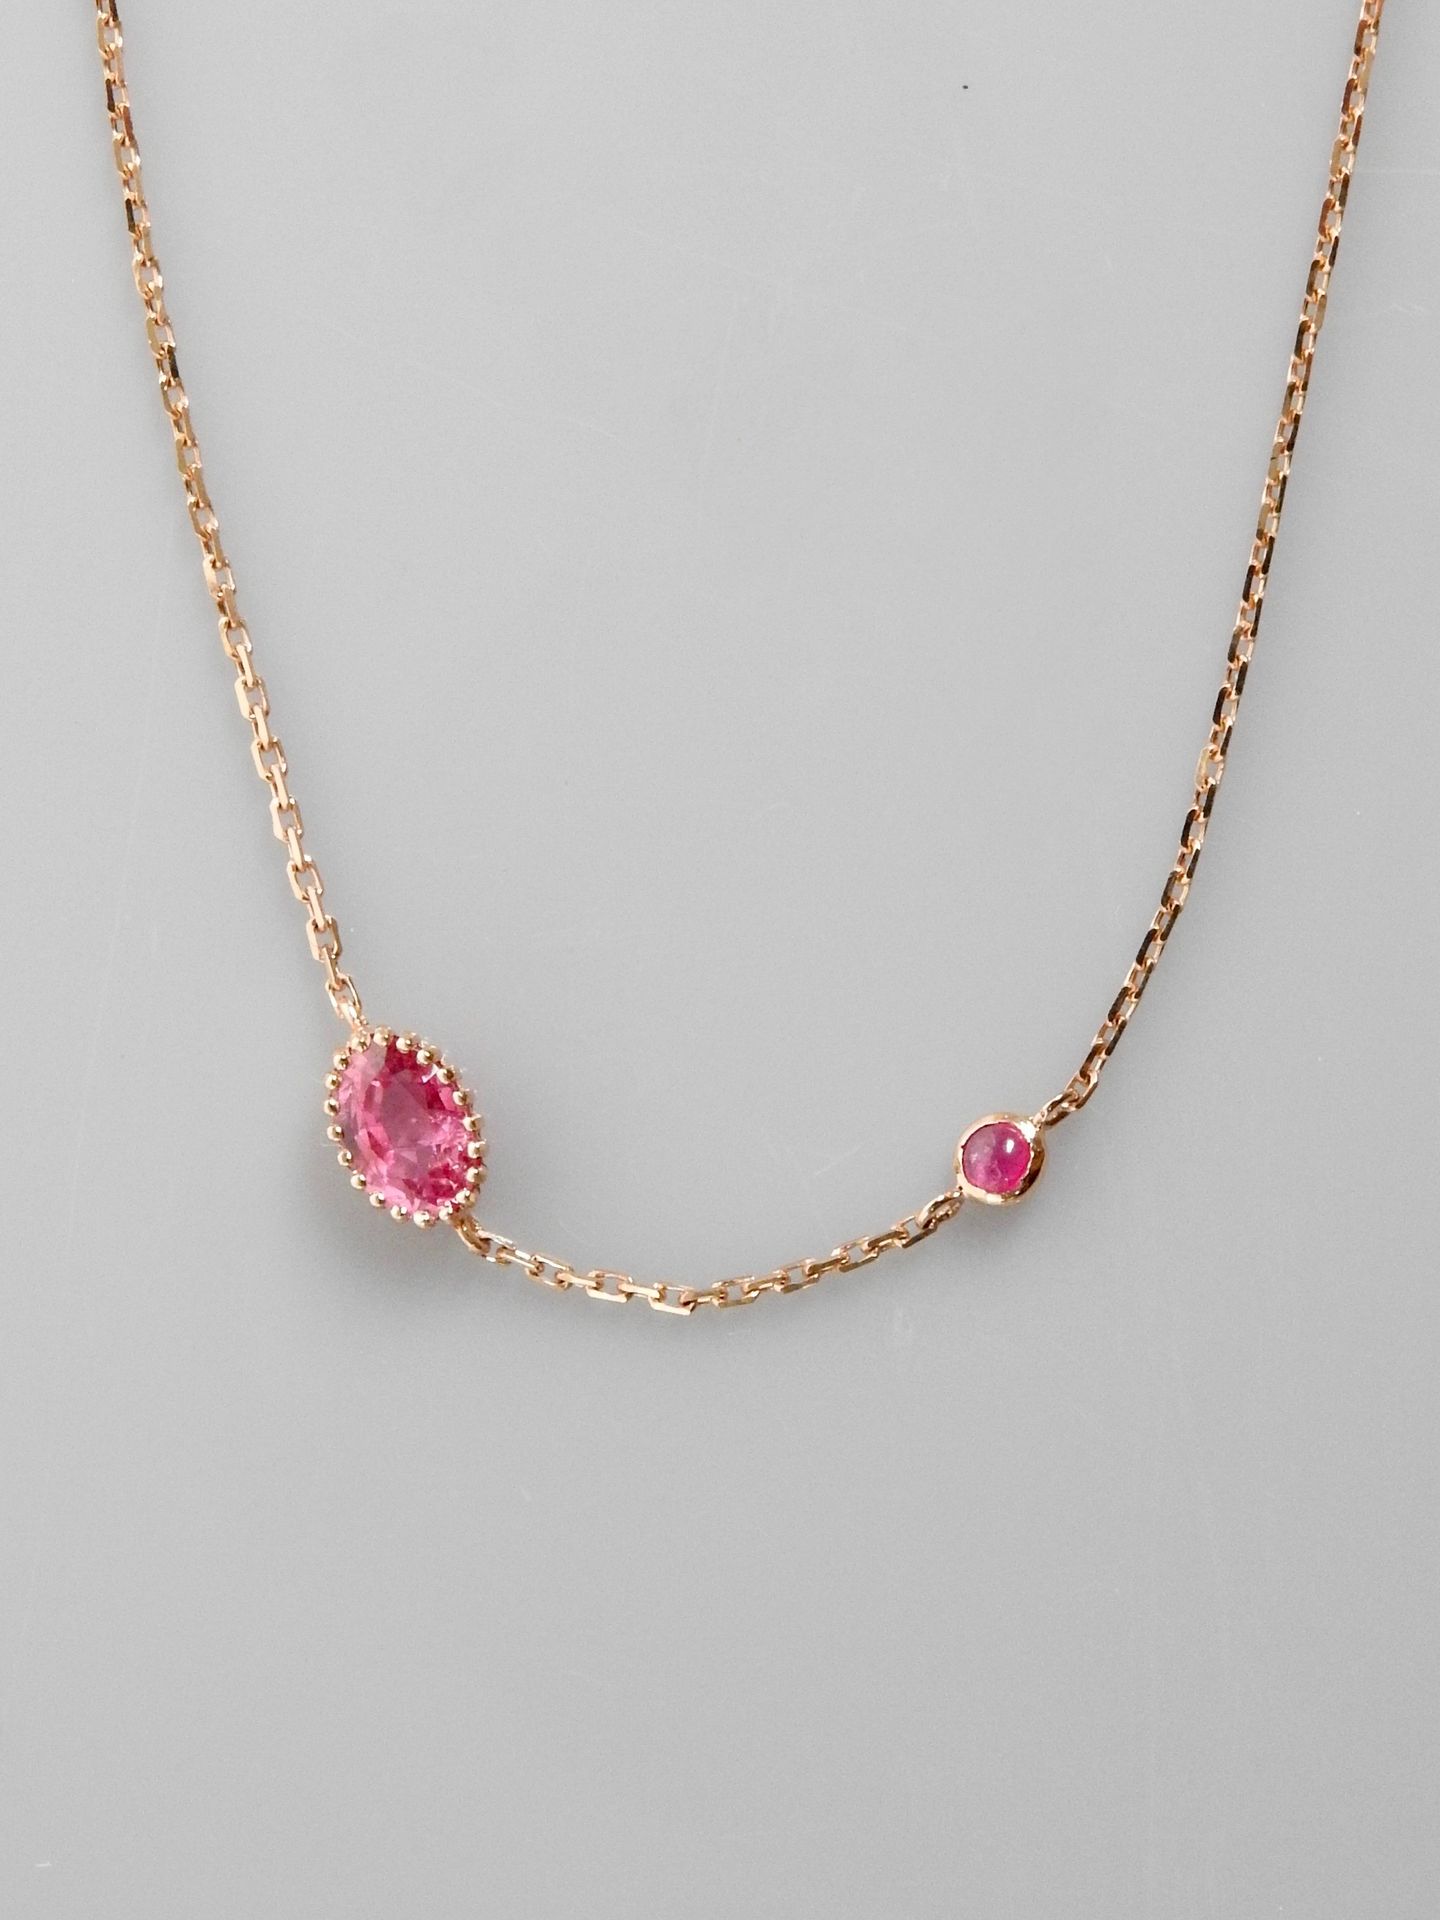 Null 玫瑰金手链，750毫米，镶有两颗椭圆形粉色蓝宝石，一颗椭圆形，一颗圆形，共约0.70克拉，可调节长度17.5厘米，重量：1.1克，毛重。